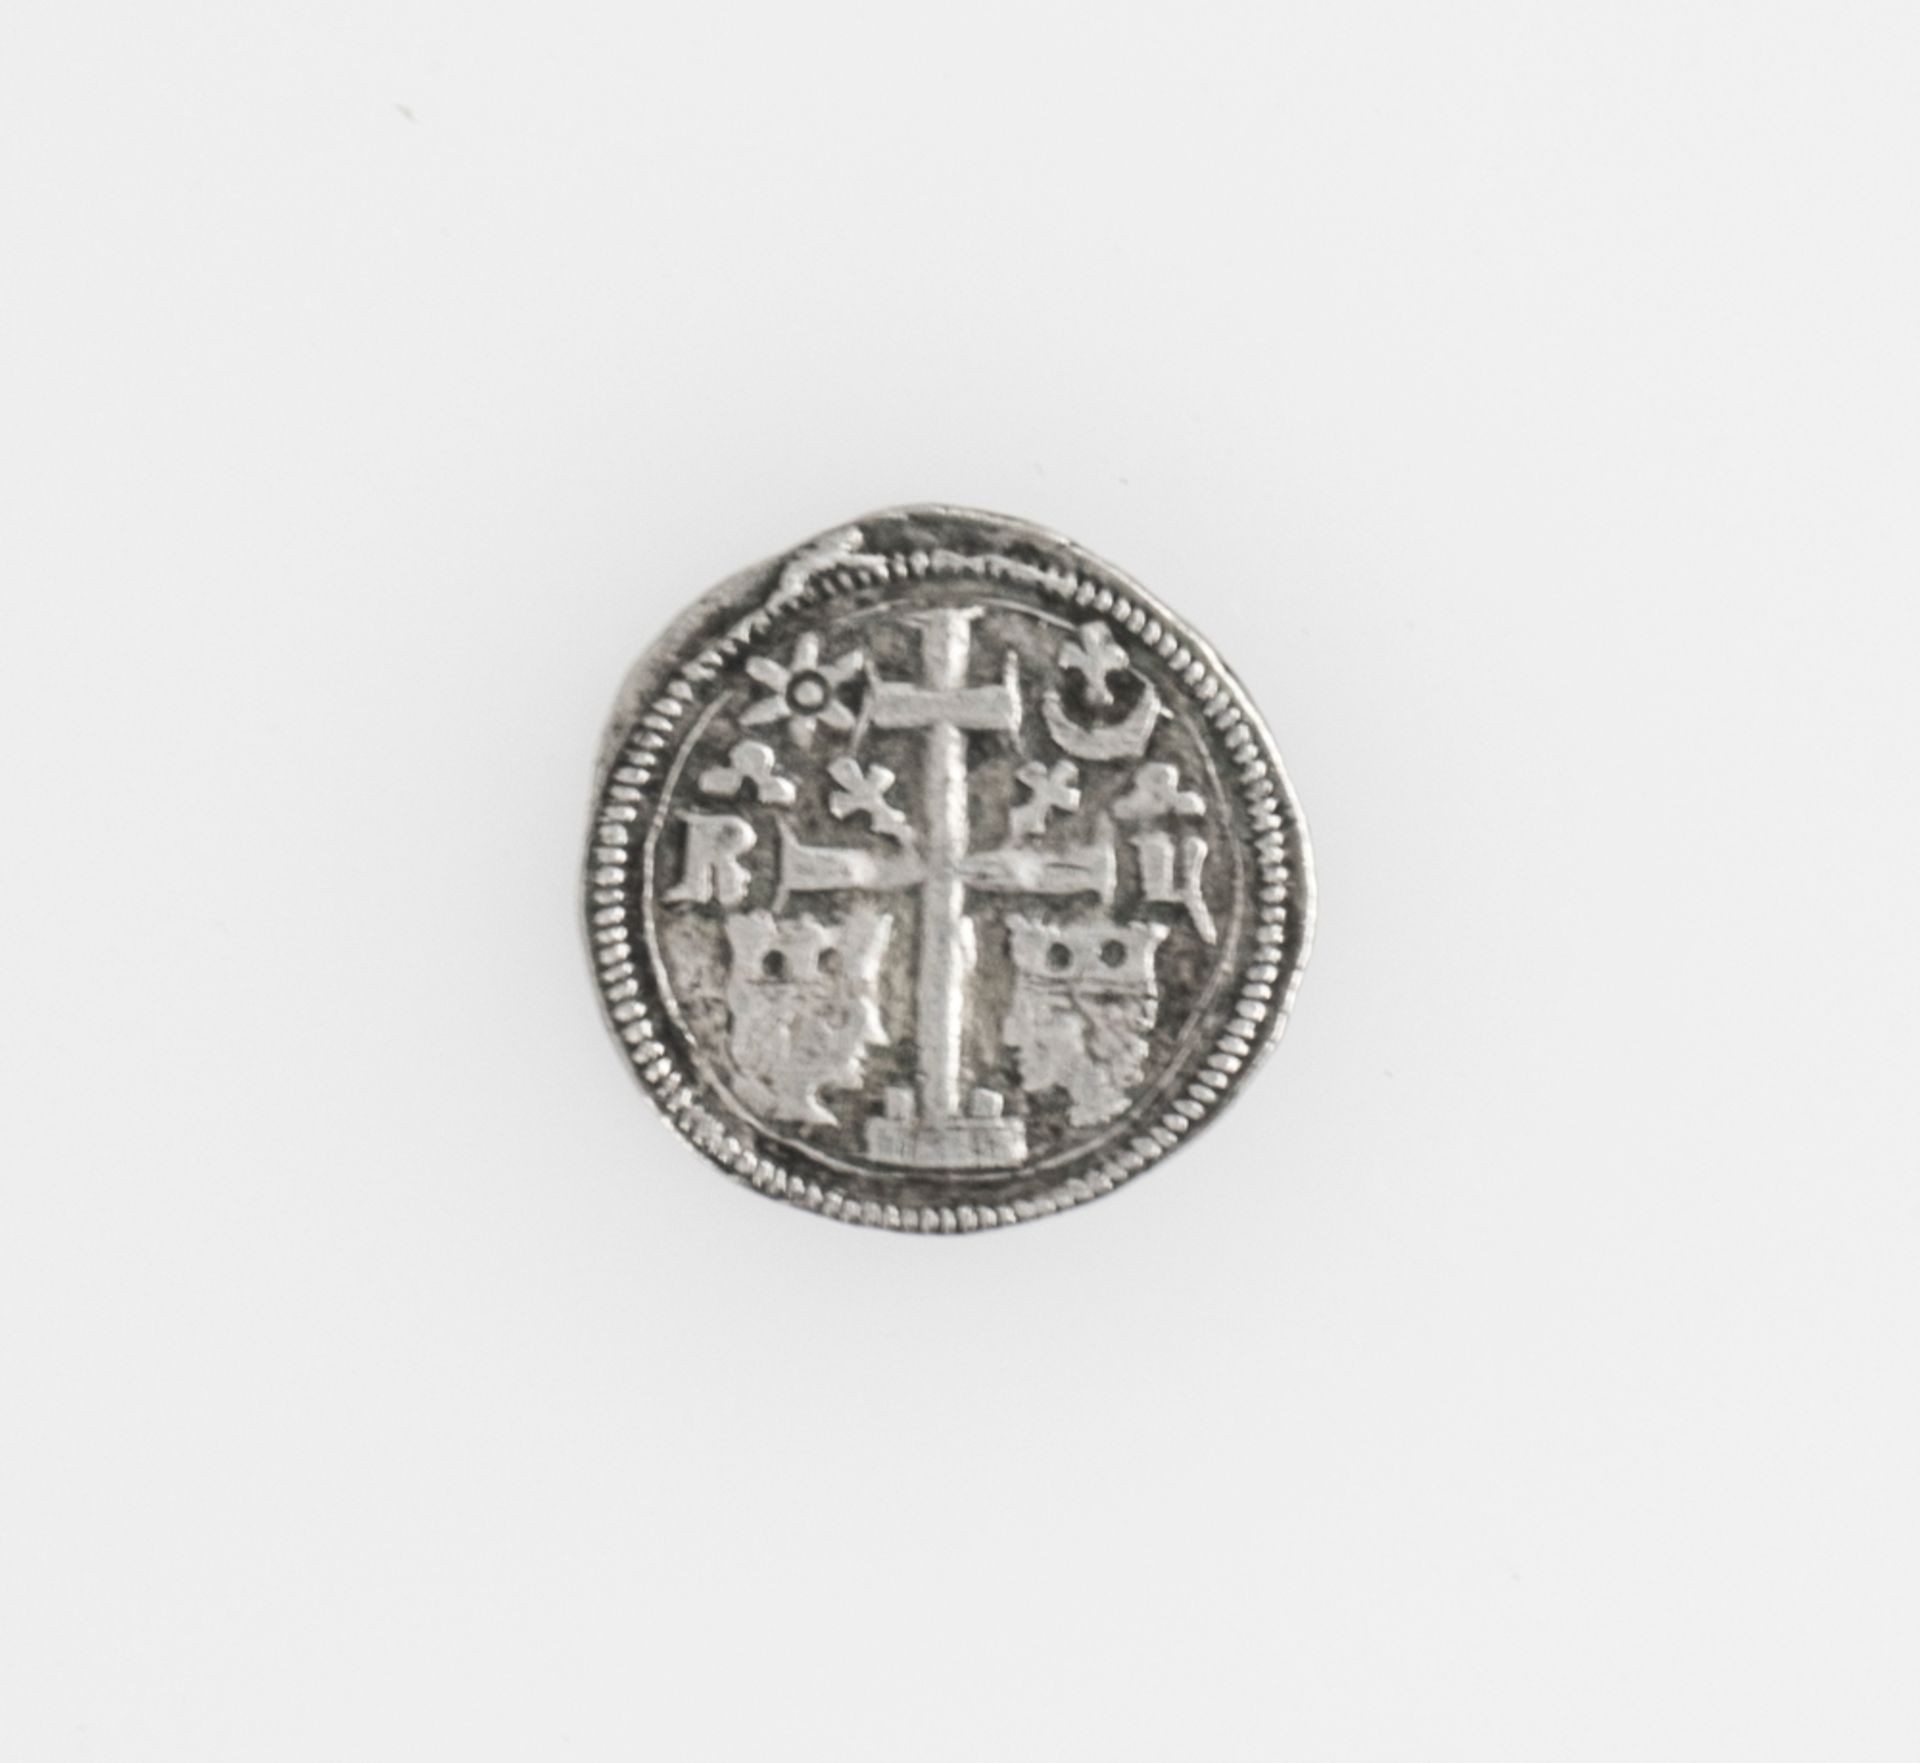 Königreich Ungarn o.J., Denar, Silber. Bela IV. Vs.: Marder nach links springend zwischen zwei - Bild 2 aus 2